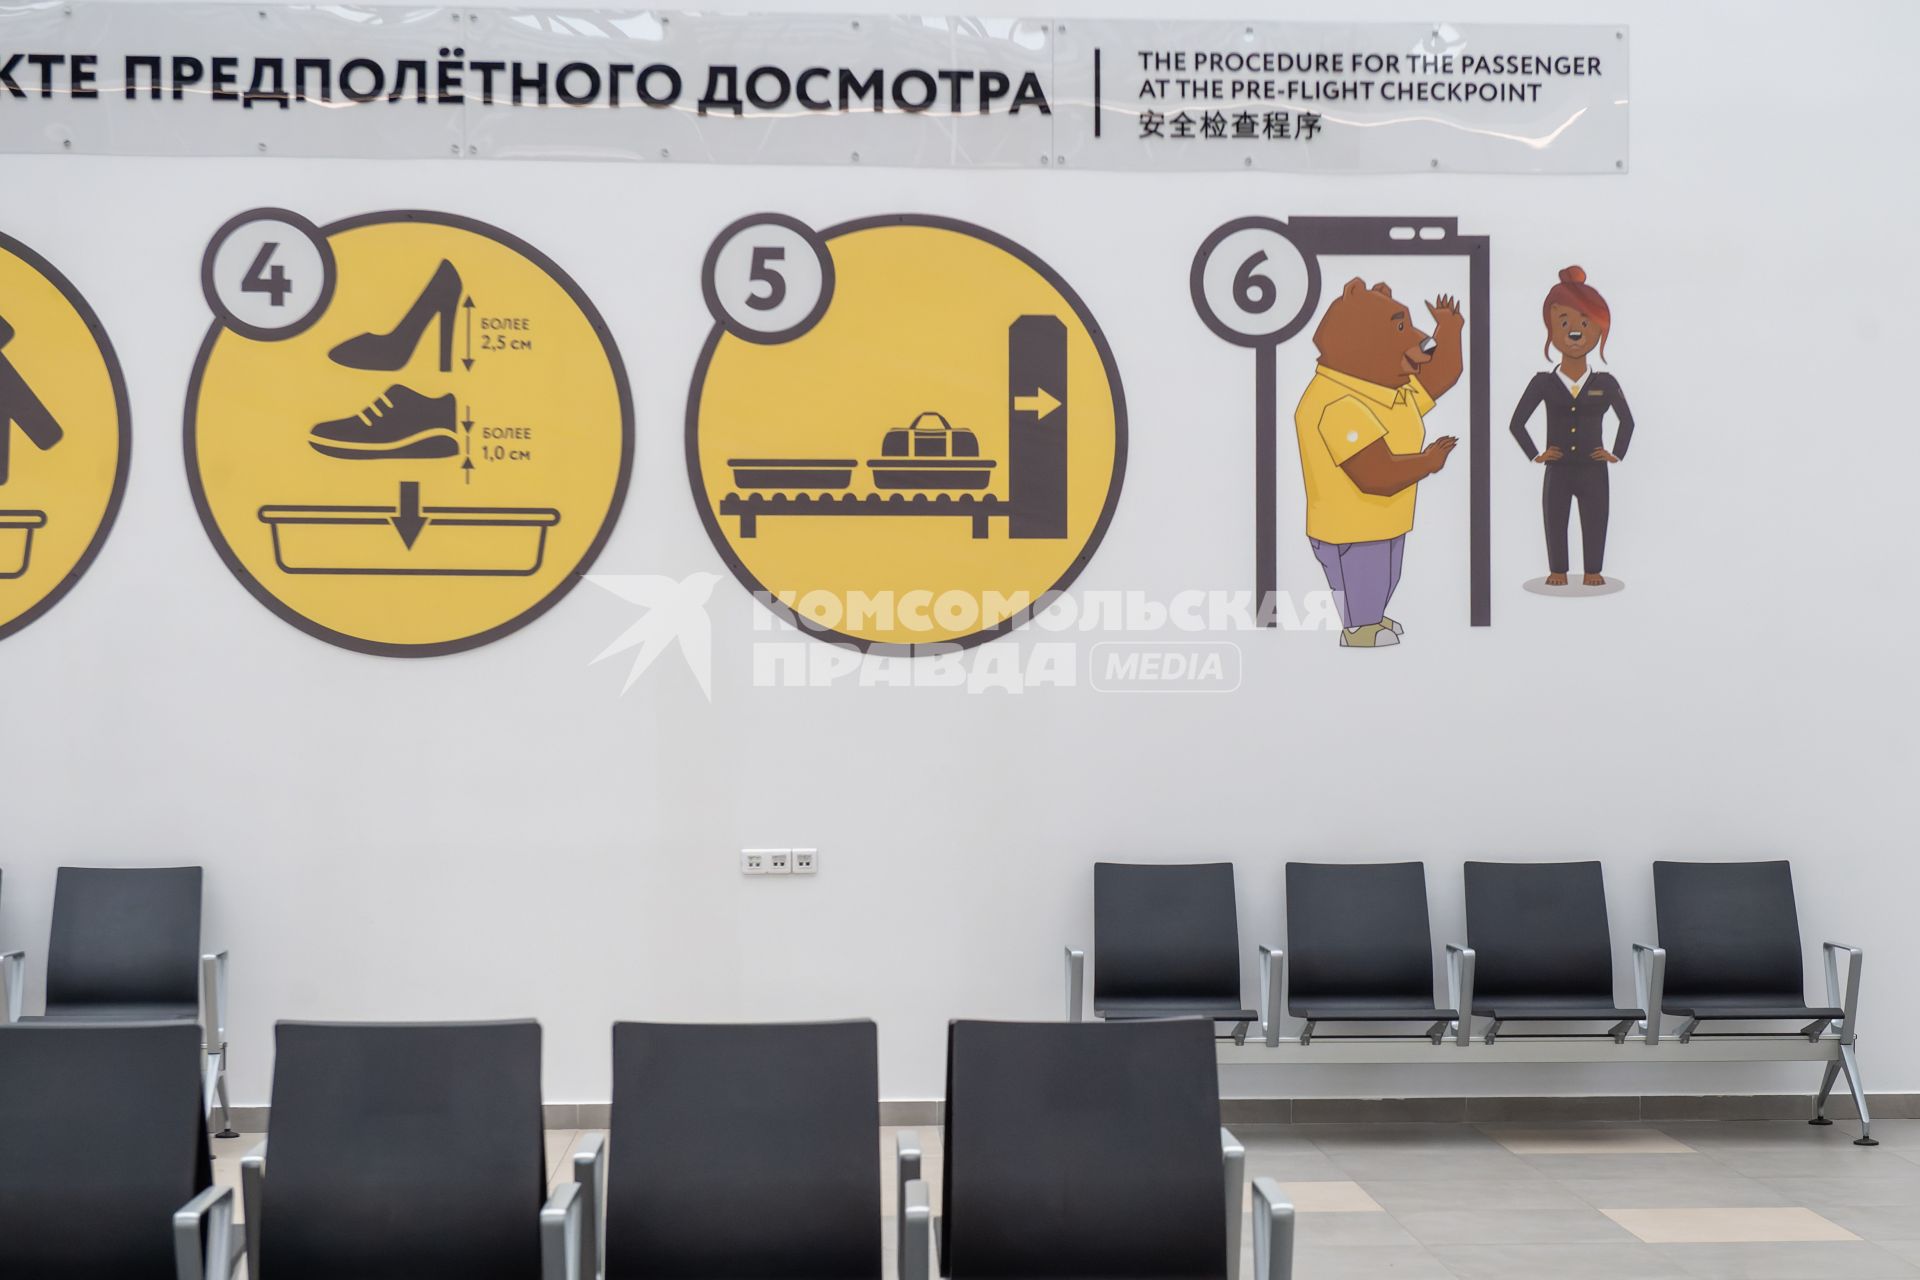 Хабаровск. Новый терминал внутренних авиалиний хабаровского международного аэропорта.